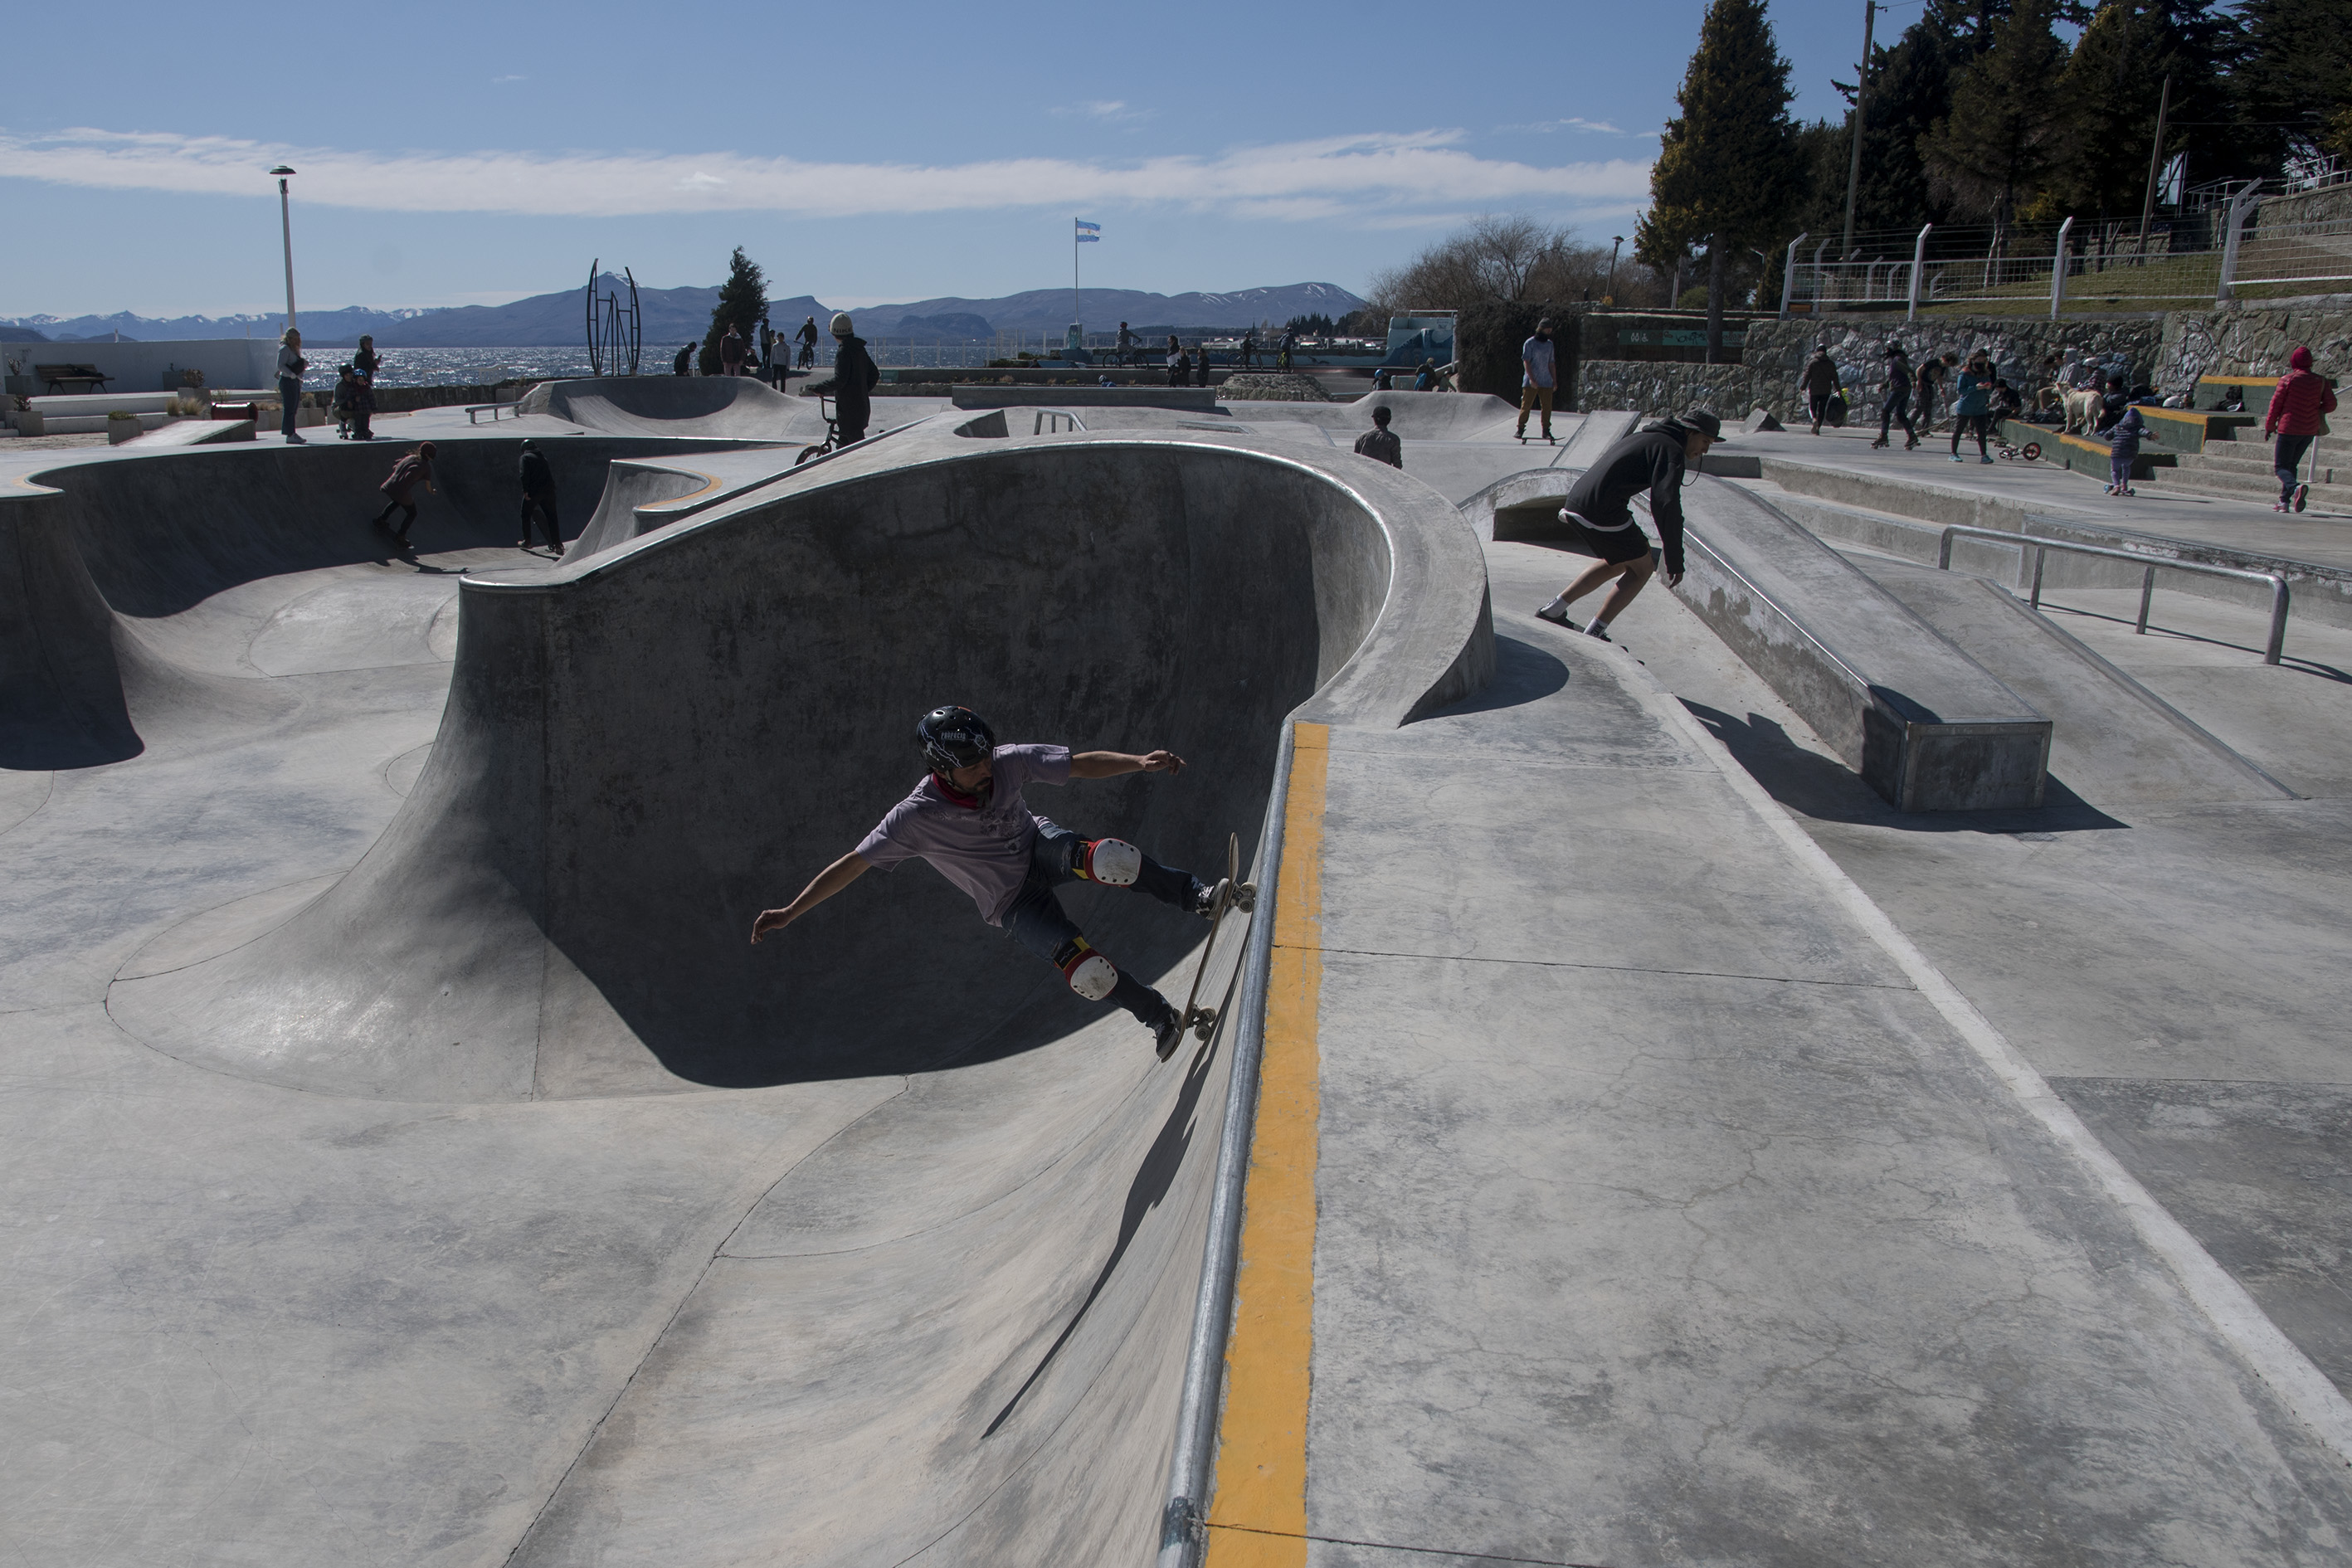 El skate park está ubicado junto al lago Nahuel Huapi. Foto: Marcelo Martínez